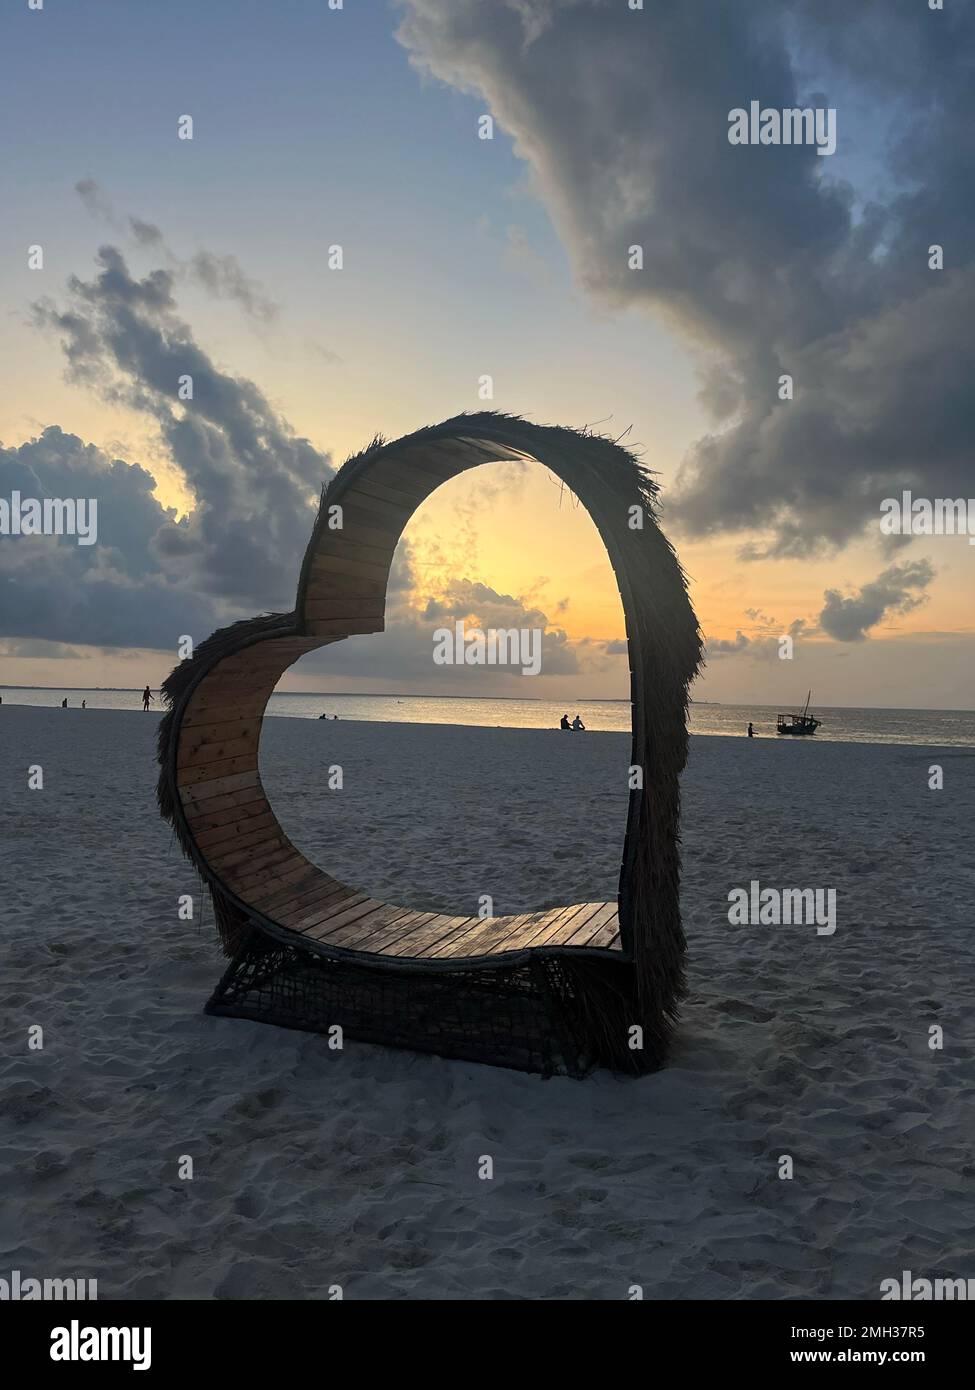 A beach heart chair. Creative beach chair with a unique design in Zanzibar, Tanzania. Stock Photo